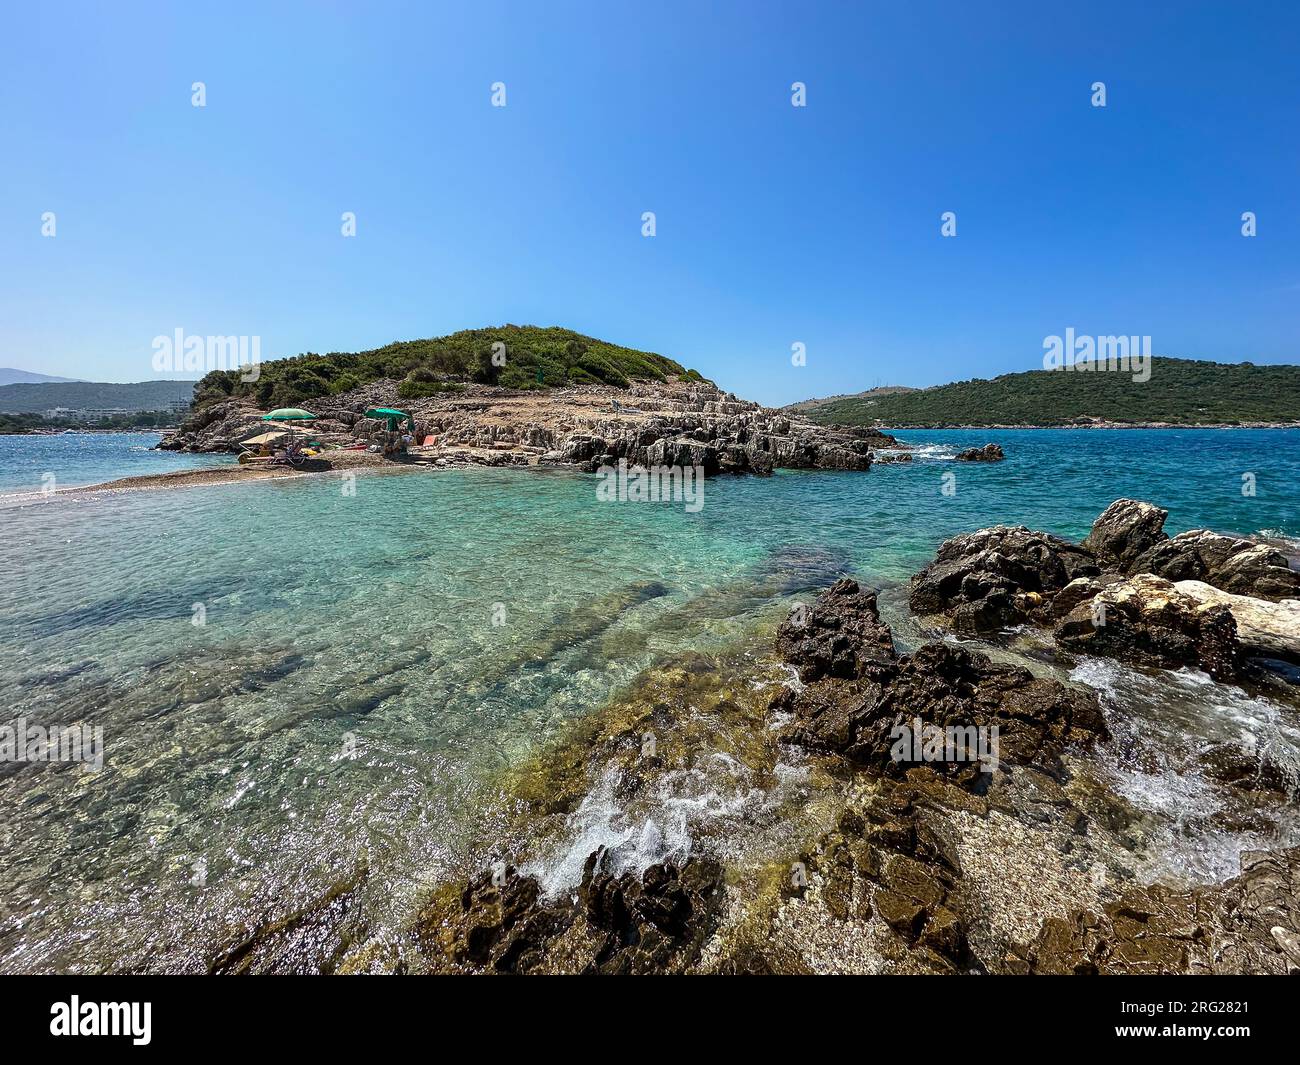 Isole Gemelle di Ksamil in Albanien mit türkisfarbenem Wasser. Ionisches Meer Landschaft der albanischen Insel während des Sommertags. Stockfoto